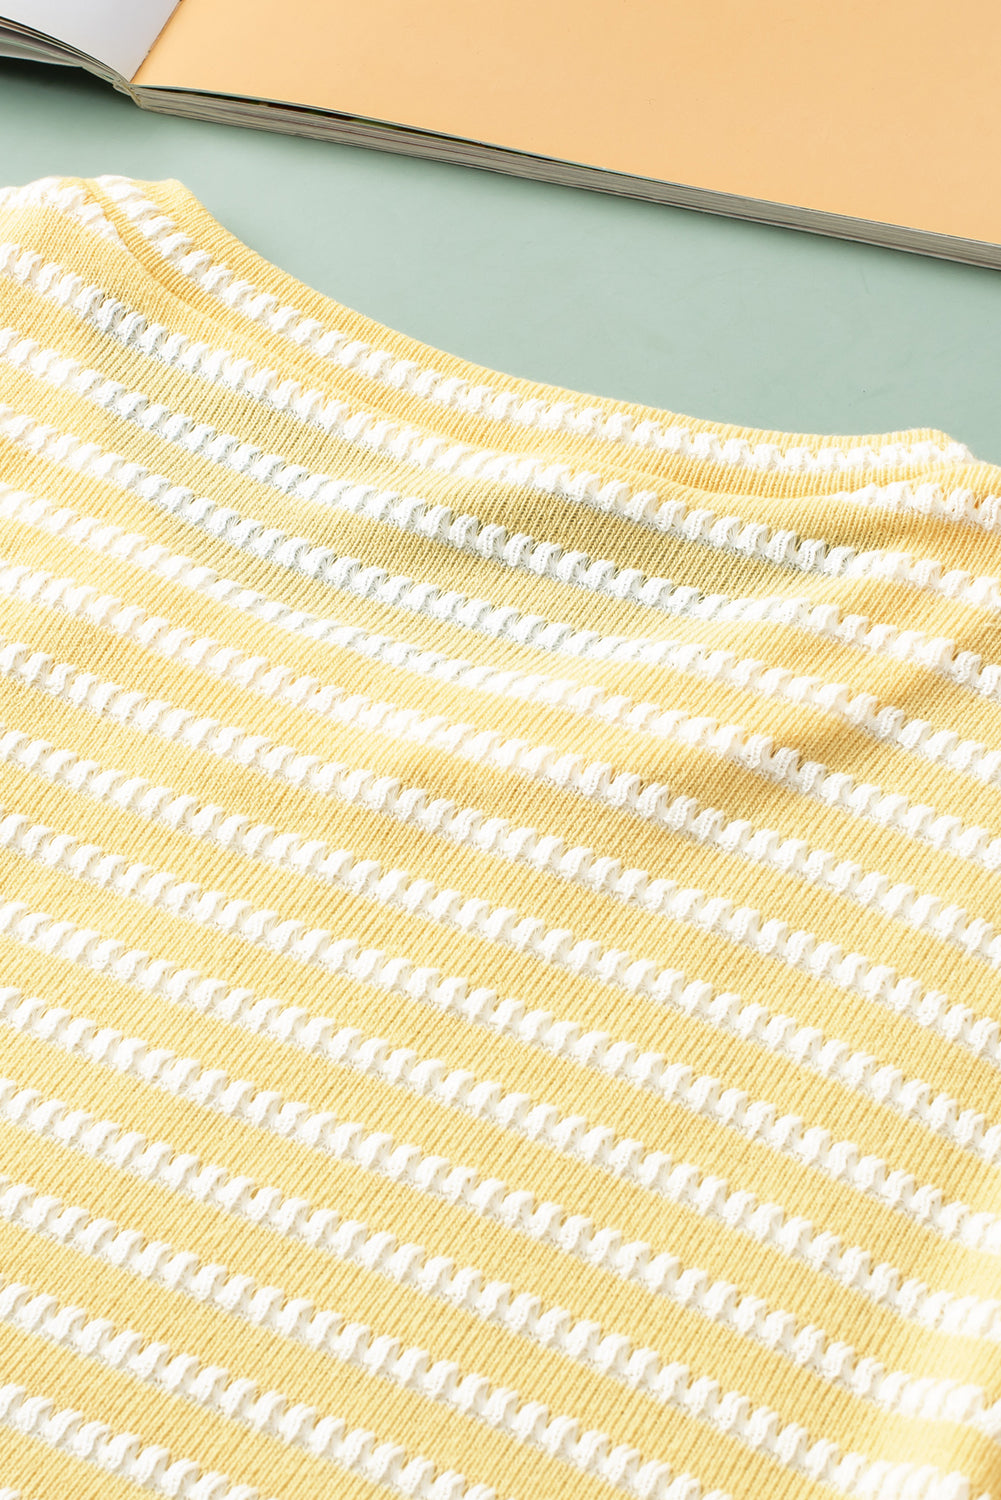 Džemper veće veličine s kratkim puf rukavima i žutim prugama